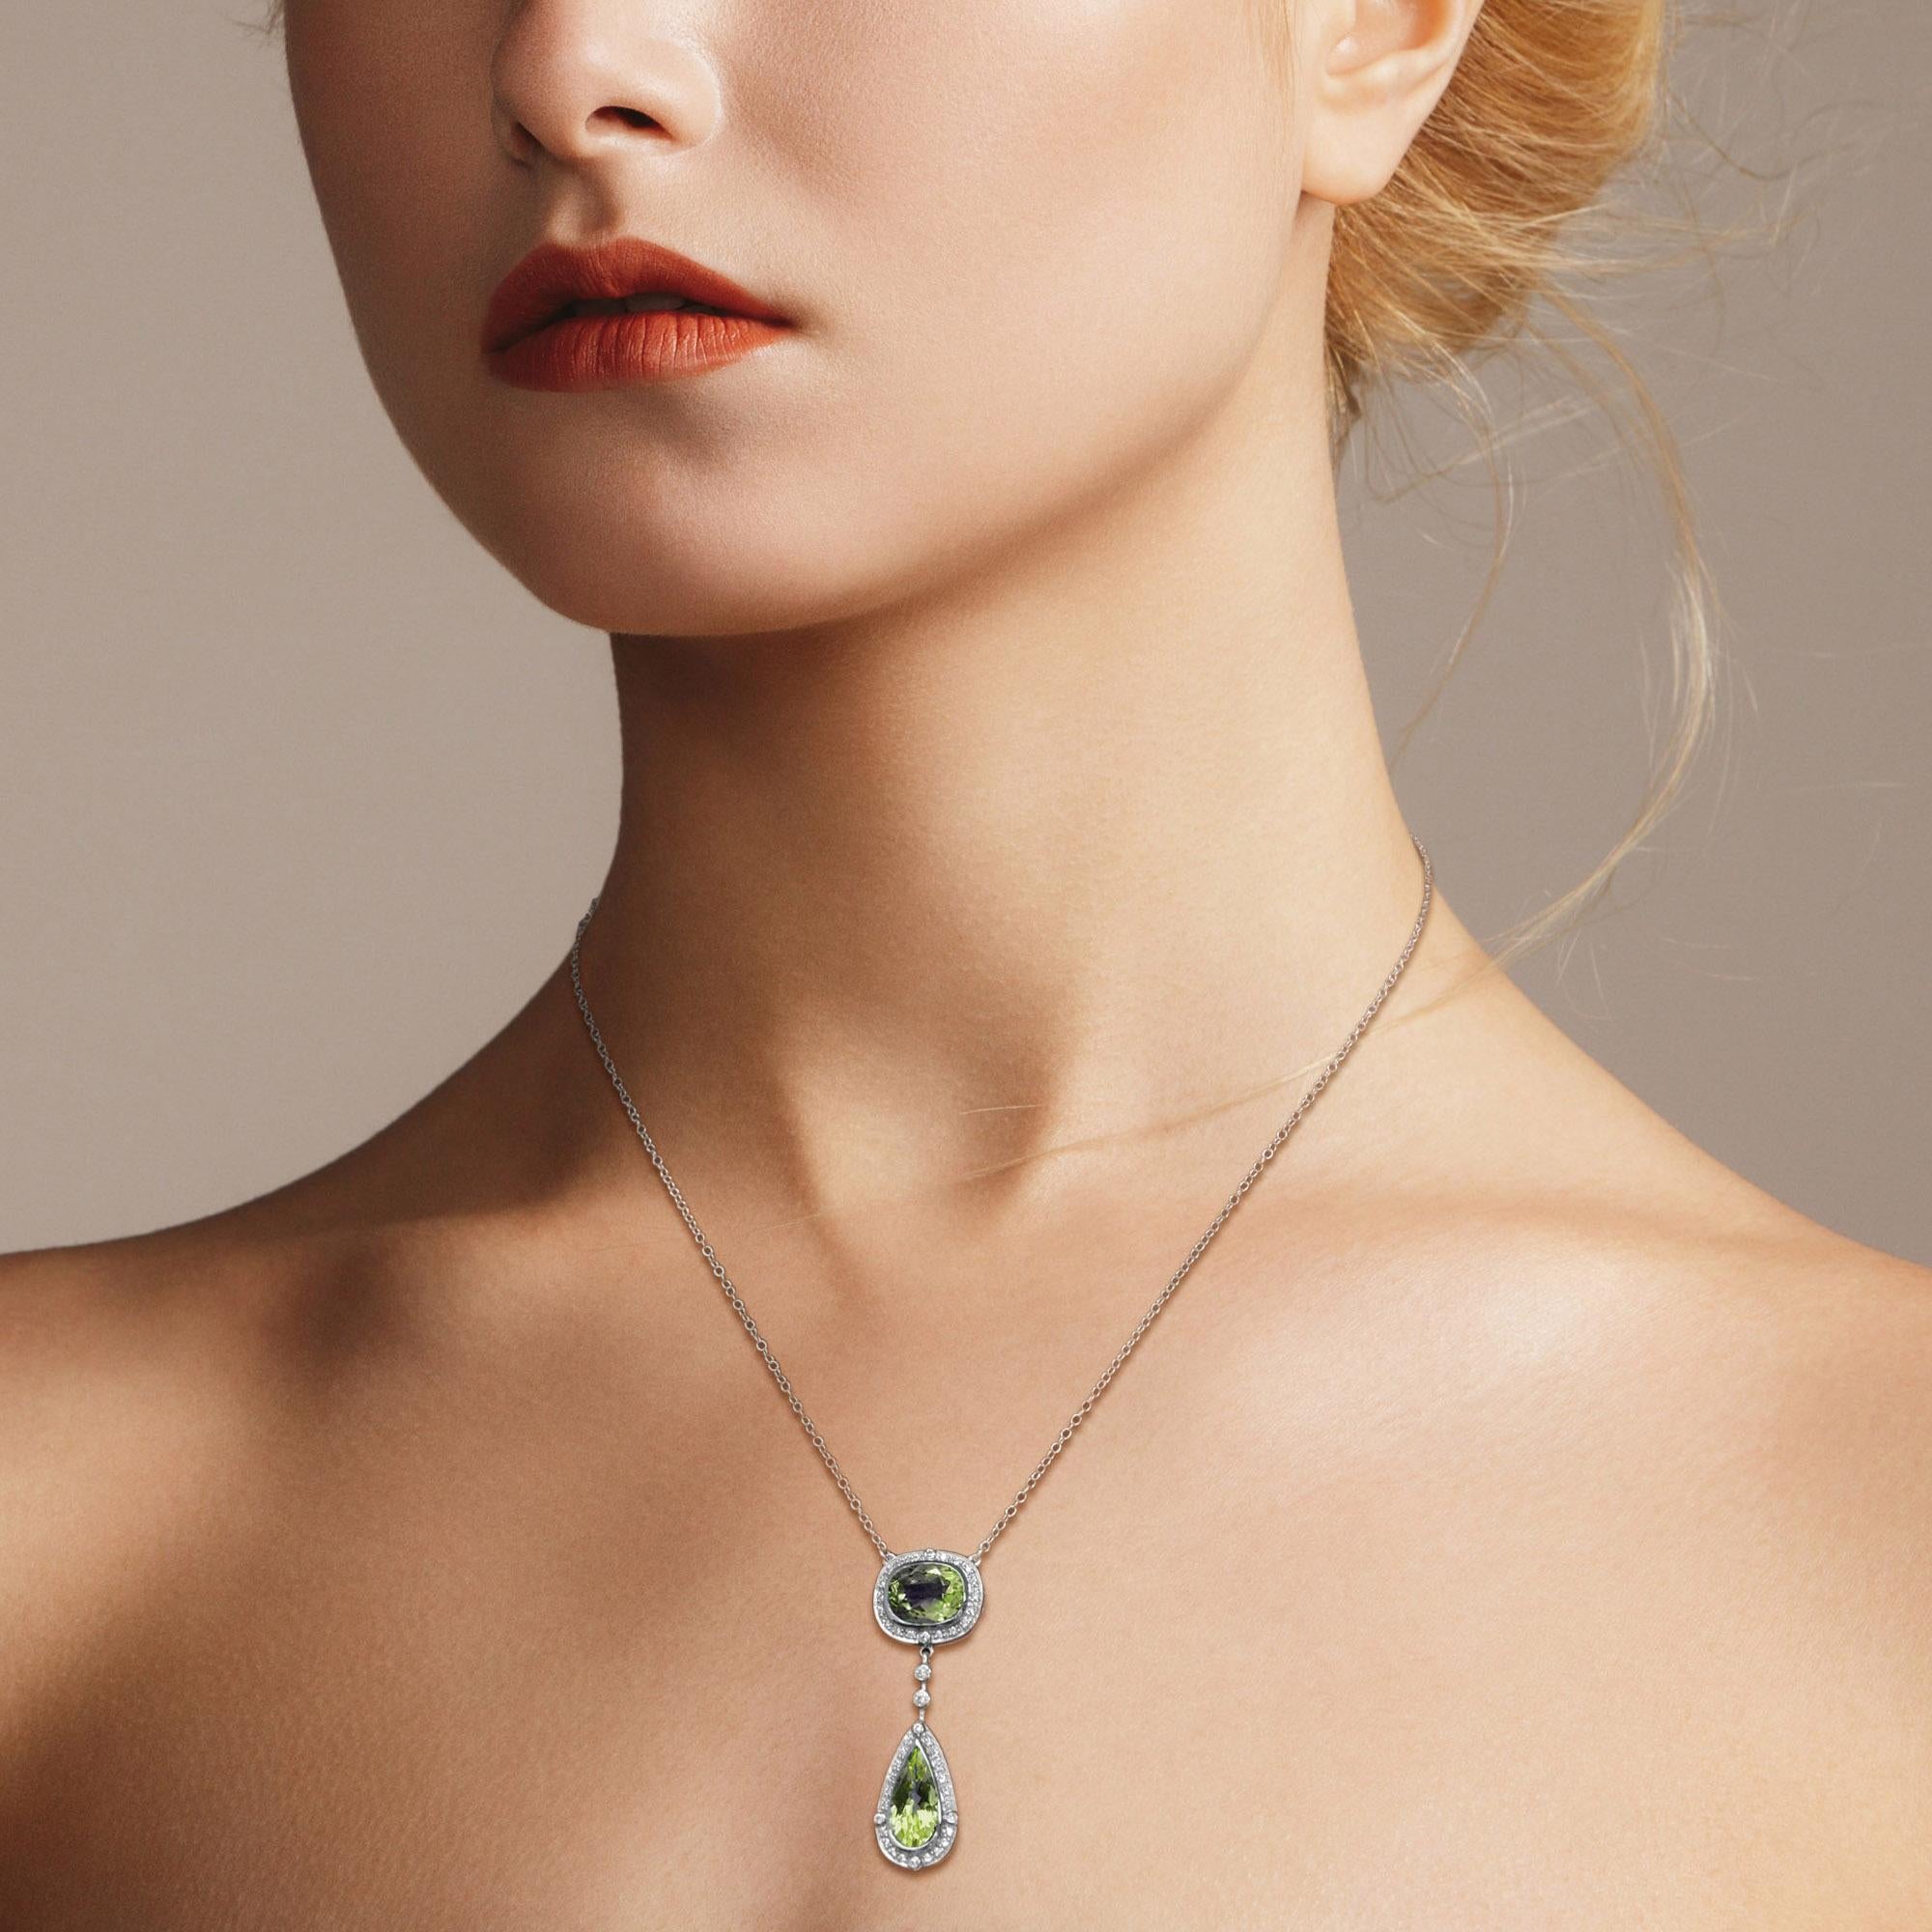 Kreieren Sie einen atemberaubenden und bezaubernden Look mit dieser doppelreihigen Halskette mit Peridot und Diamanten als Akzent! Geschliffen in der faszinierenden, facettierten Kissen- und Birnenform. Das atemberaubende Design wird durch runde